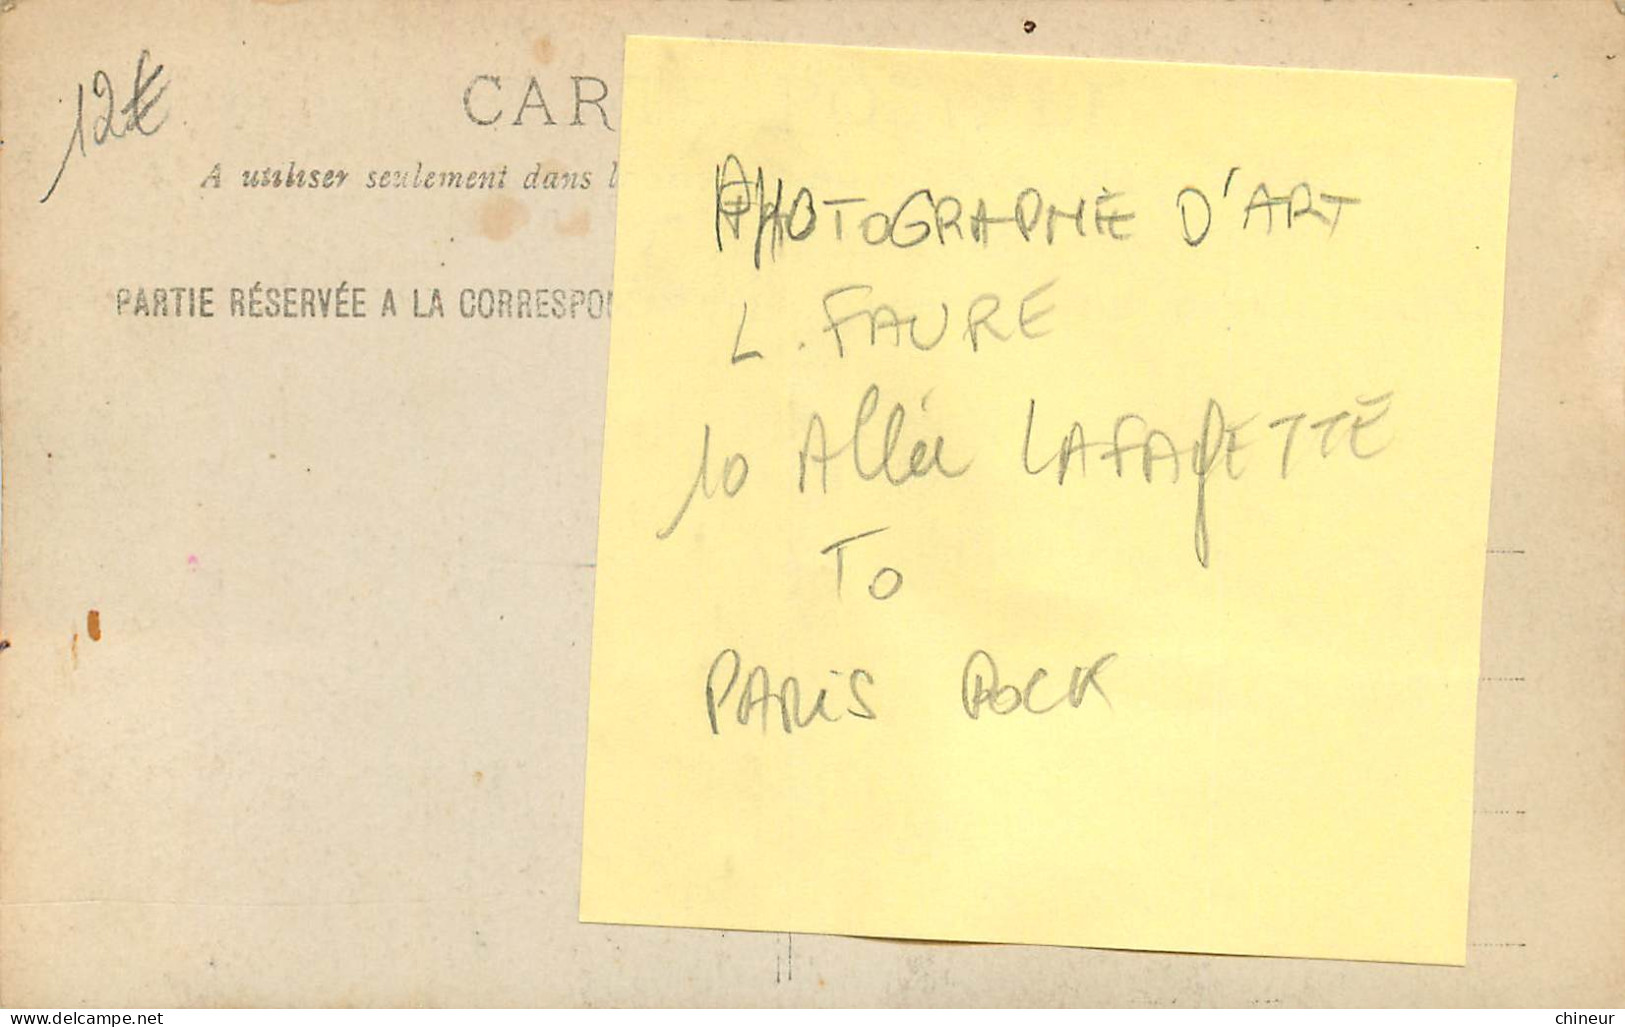 CARTE PHOTO AUTOMOBILE TACOT PHOTOGRAPHE D'ART L.FAURE 10 ALLEE LAFAYETTE PARIS POCK - Taxis & Cabs